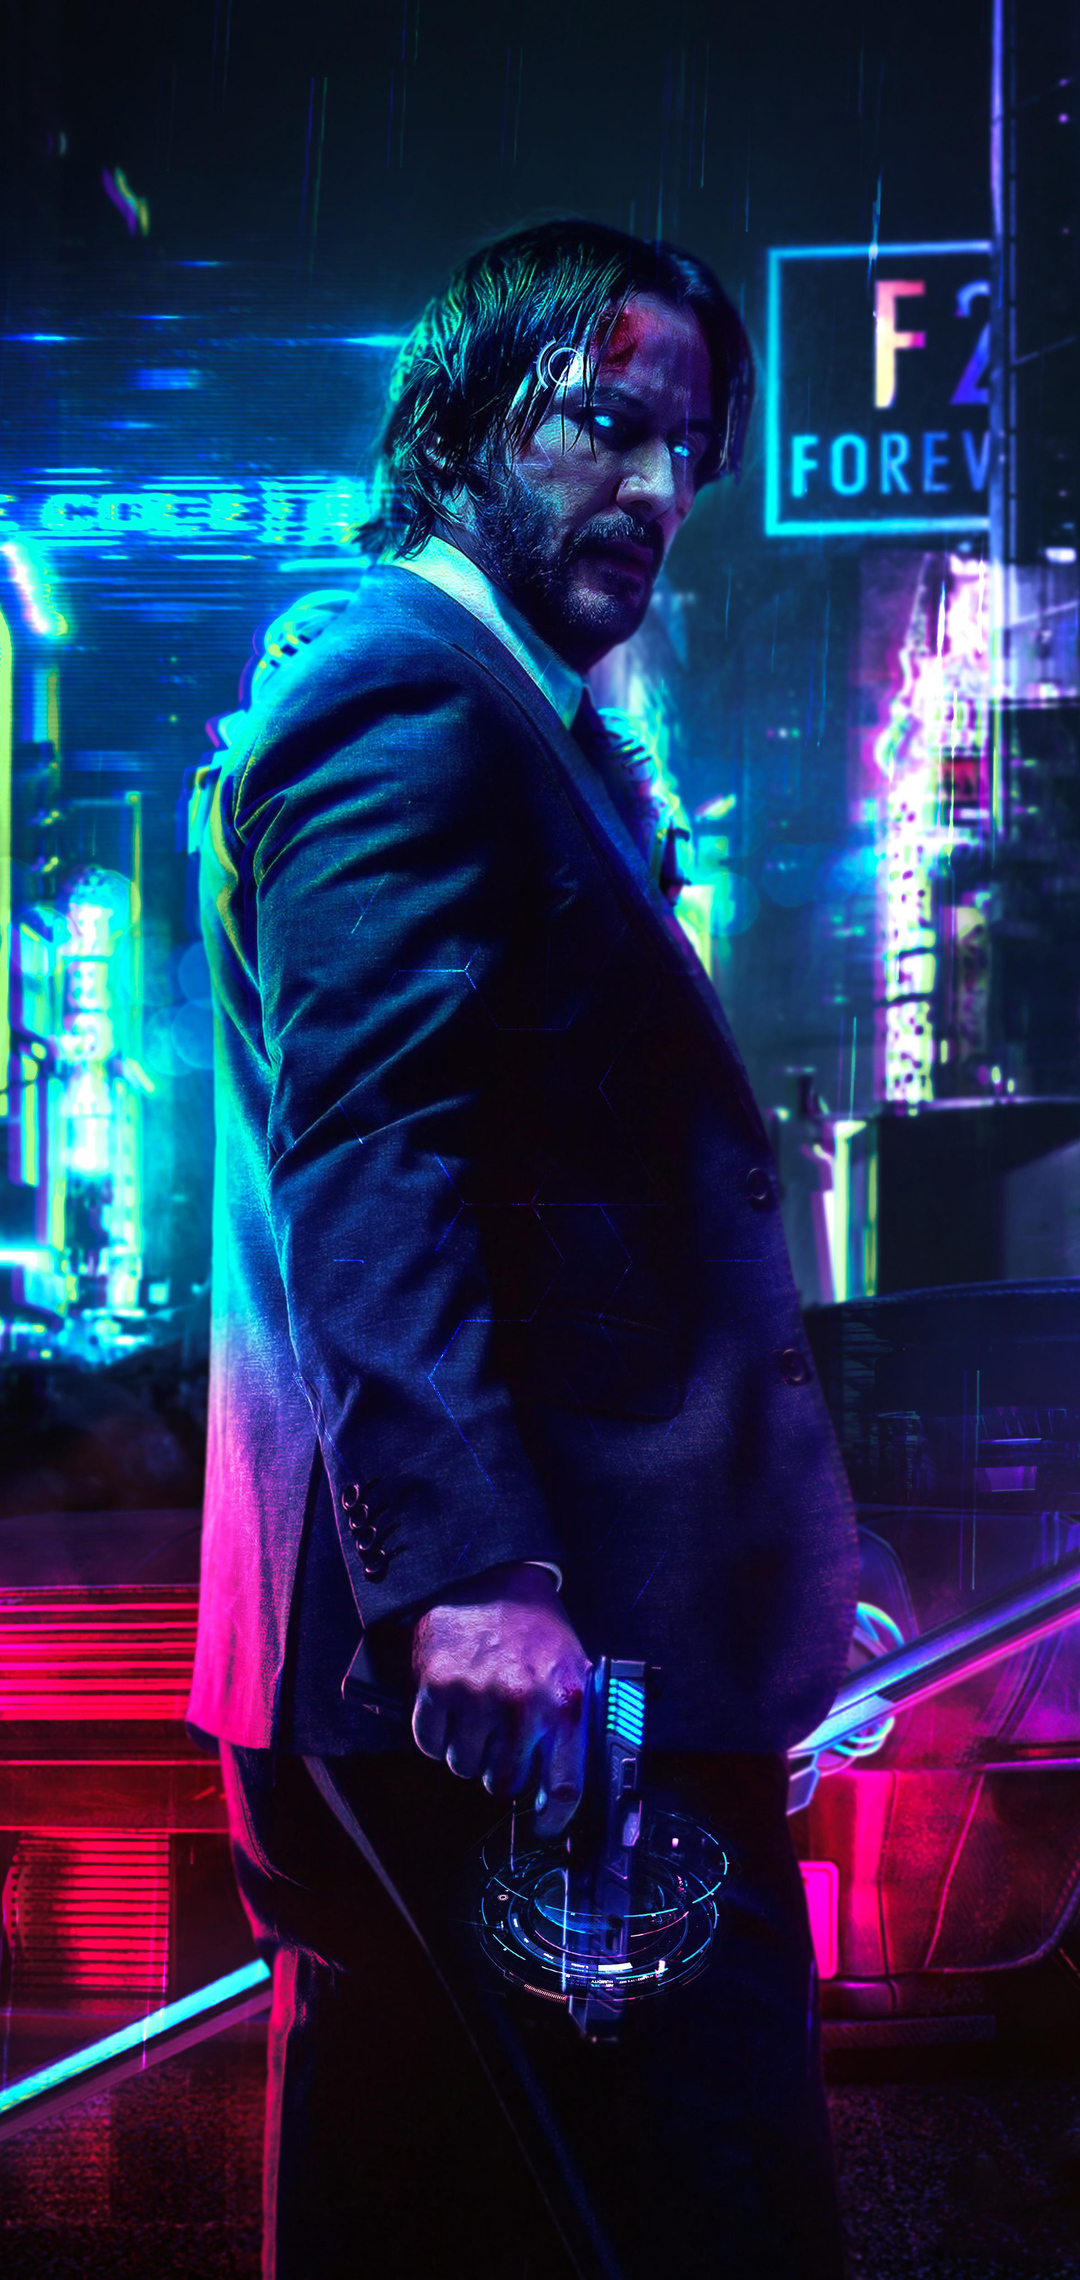 Keanu Reeves Cyberpunk 2077 FanArt. Mobile Wallpaper